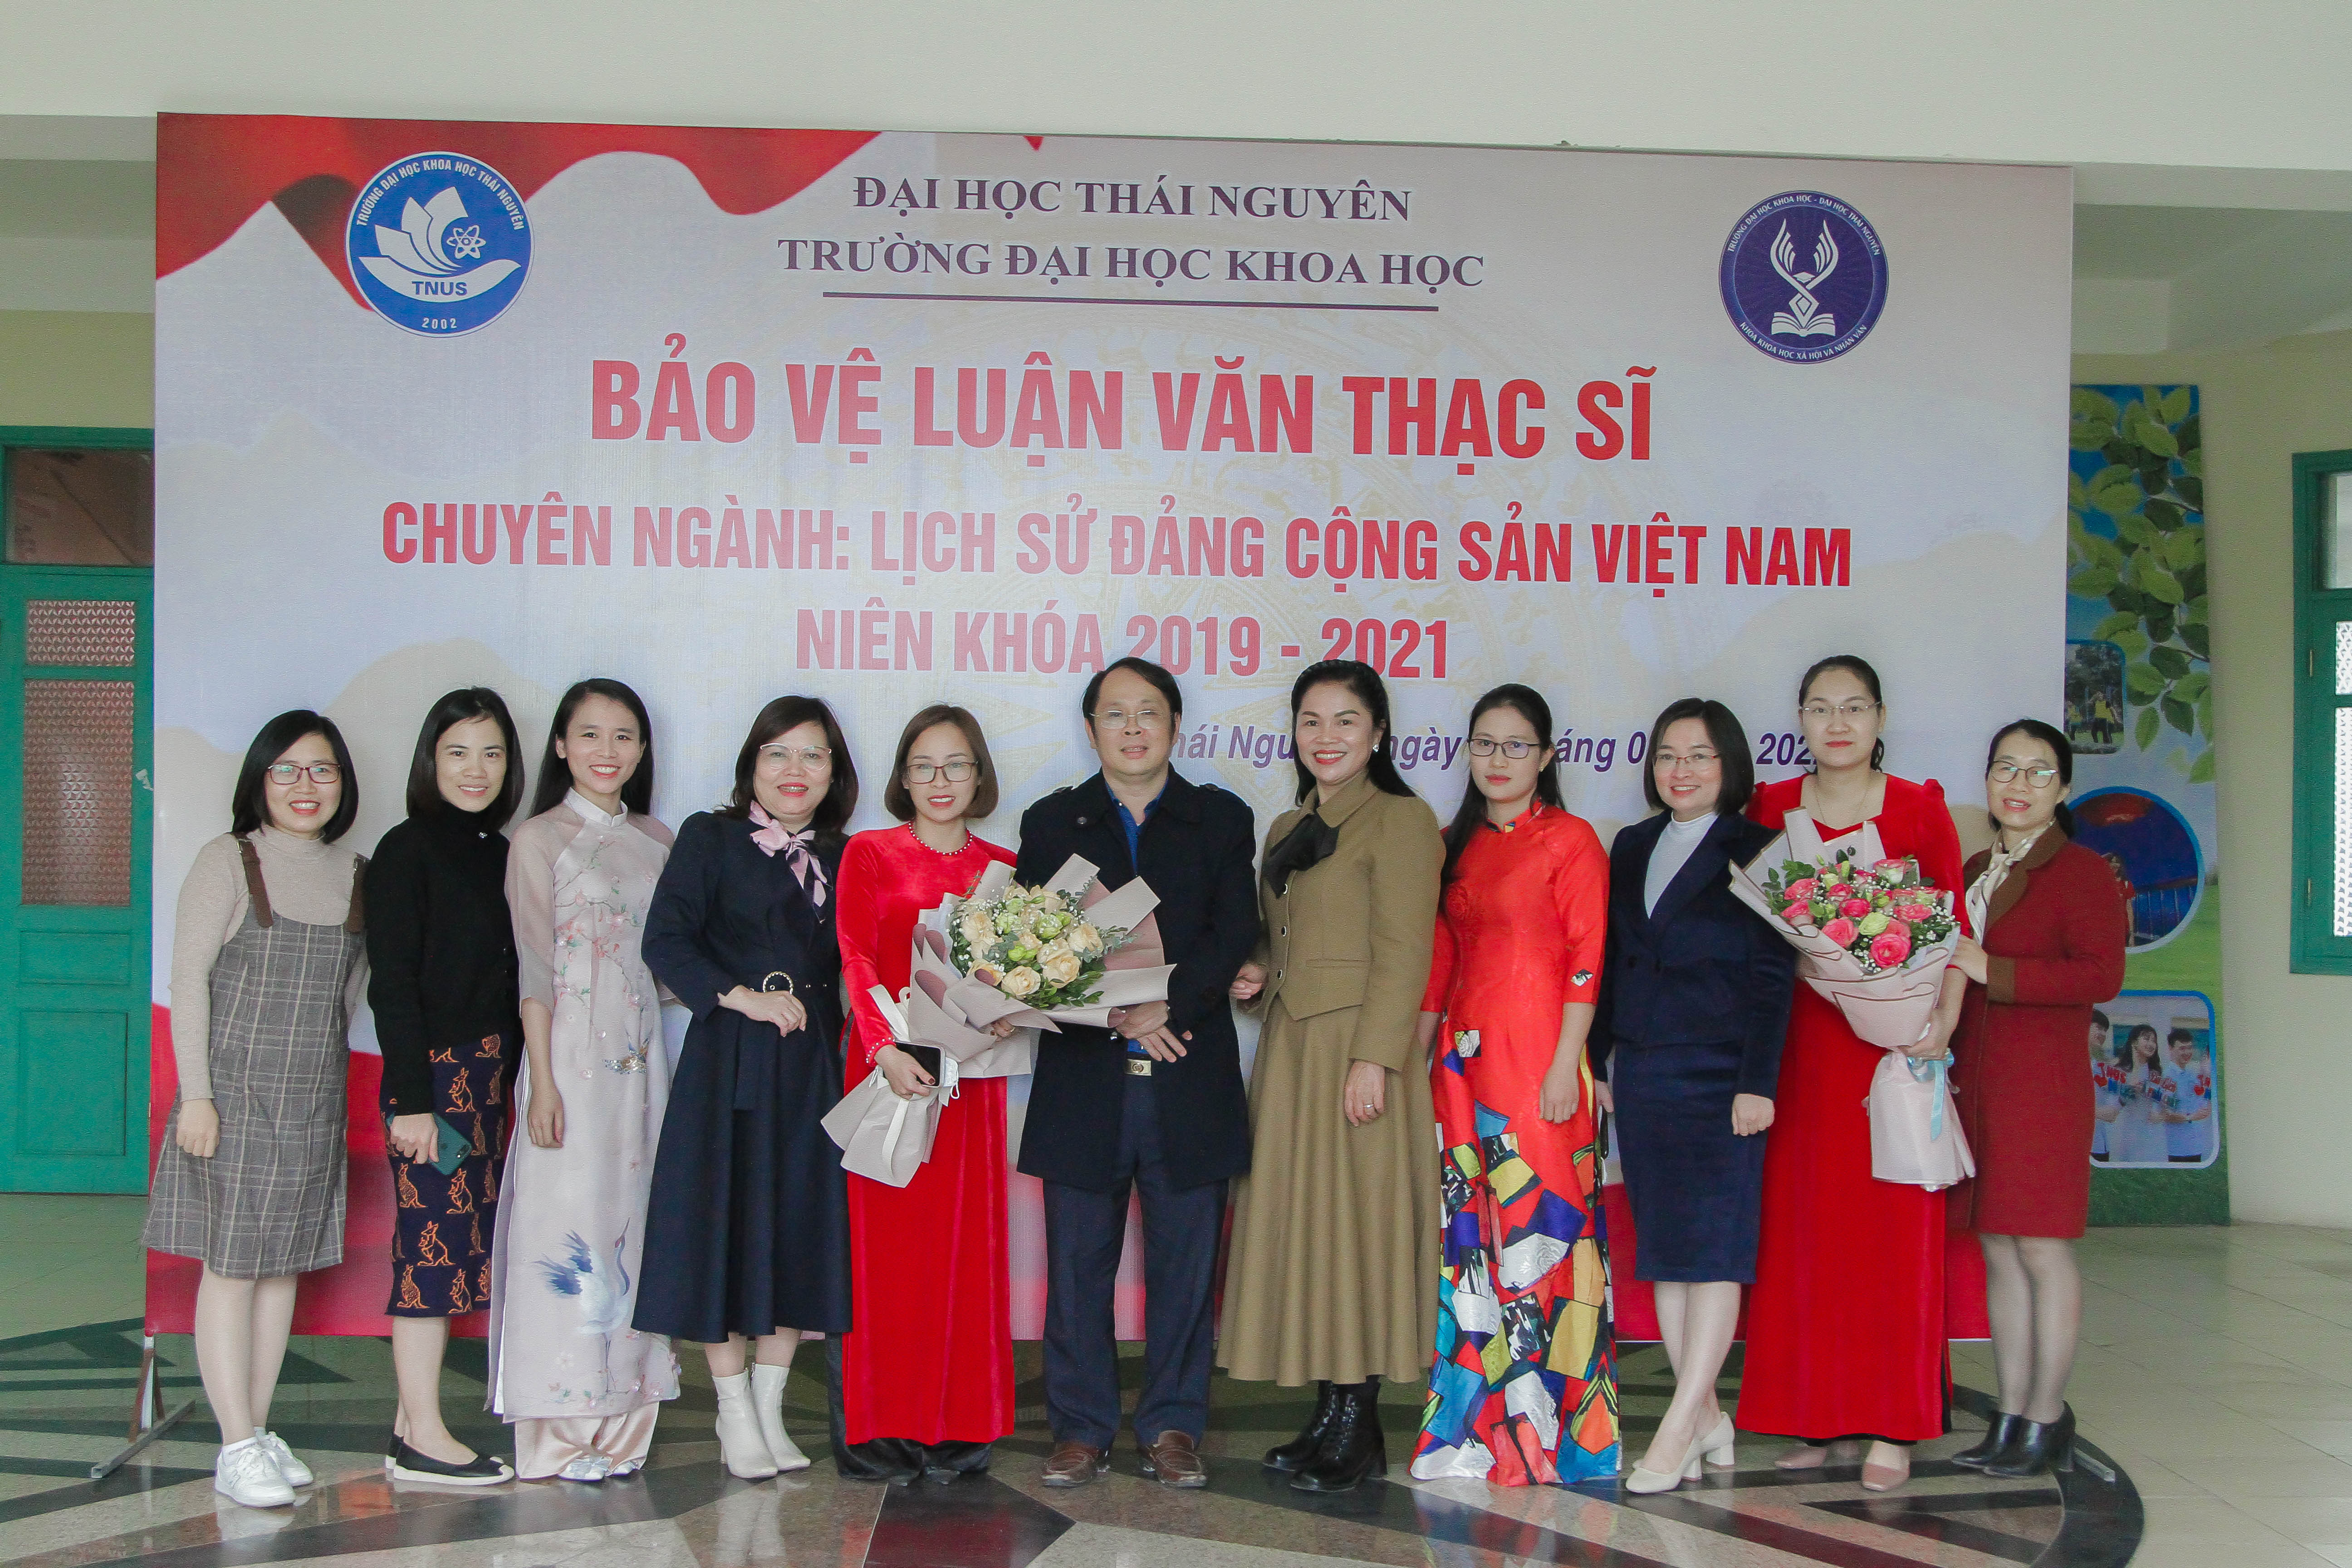 Bảo vệ luận văn thạc sĩ chuyên ngành Lịch sử Đảng Cộng sản Việt Nam